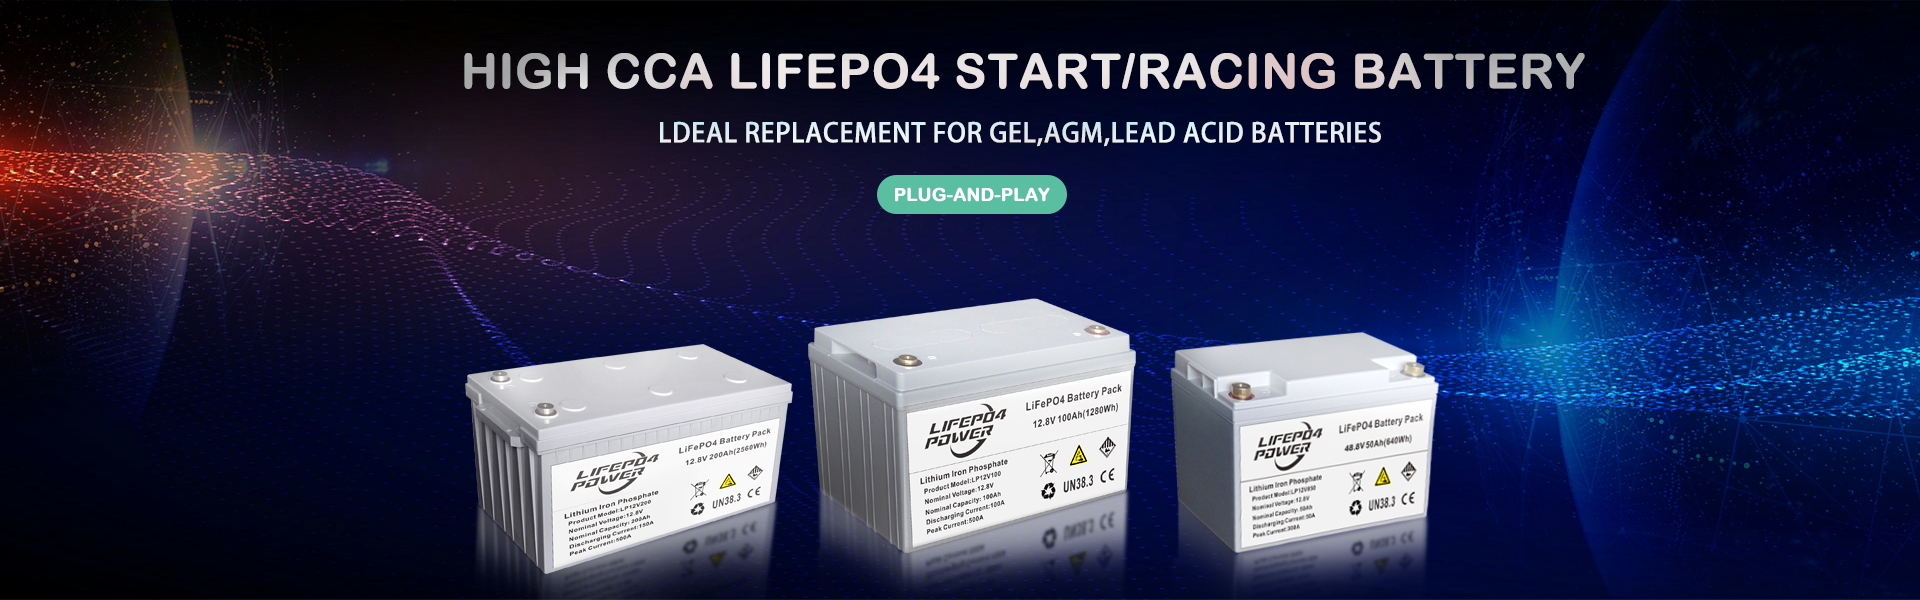 Vysoce CCA LiFePO4 start / závodní baterie Plug-and-Play. Ideální náhrada za GEL, AGM, olověné baterie